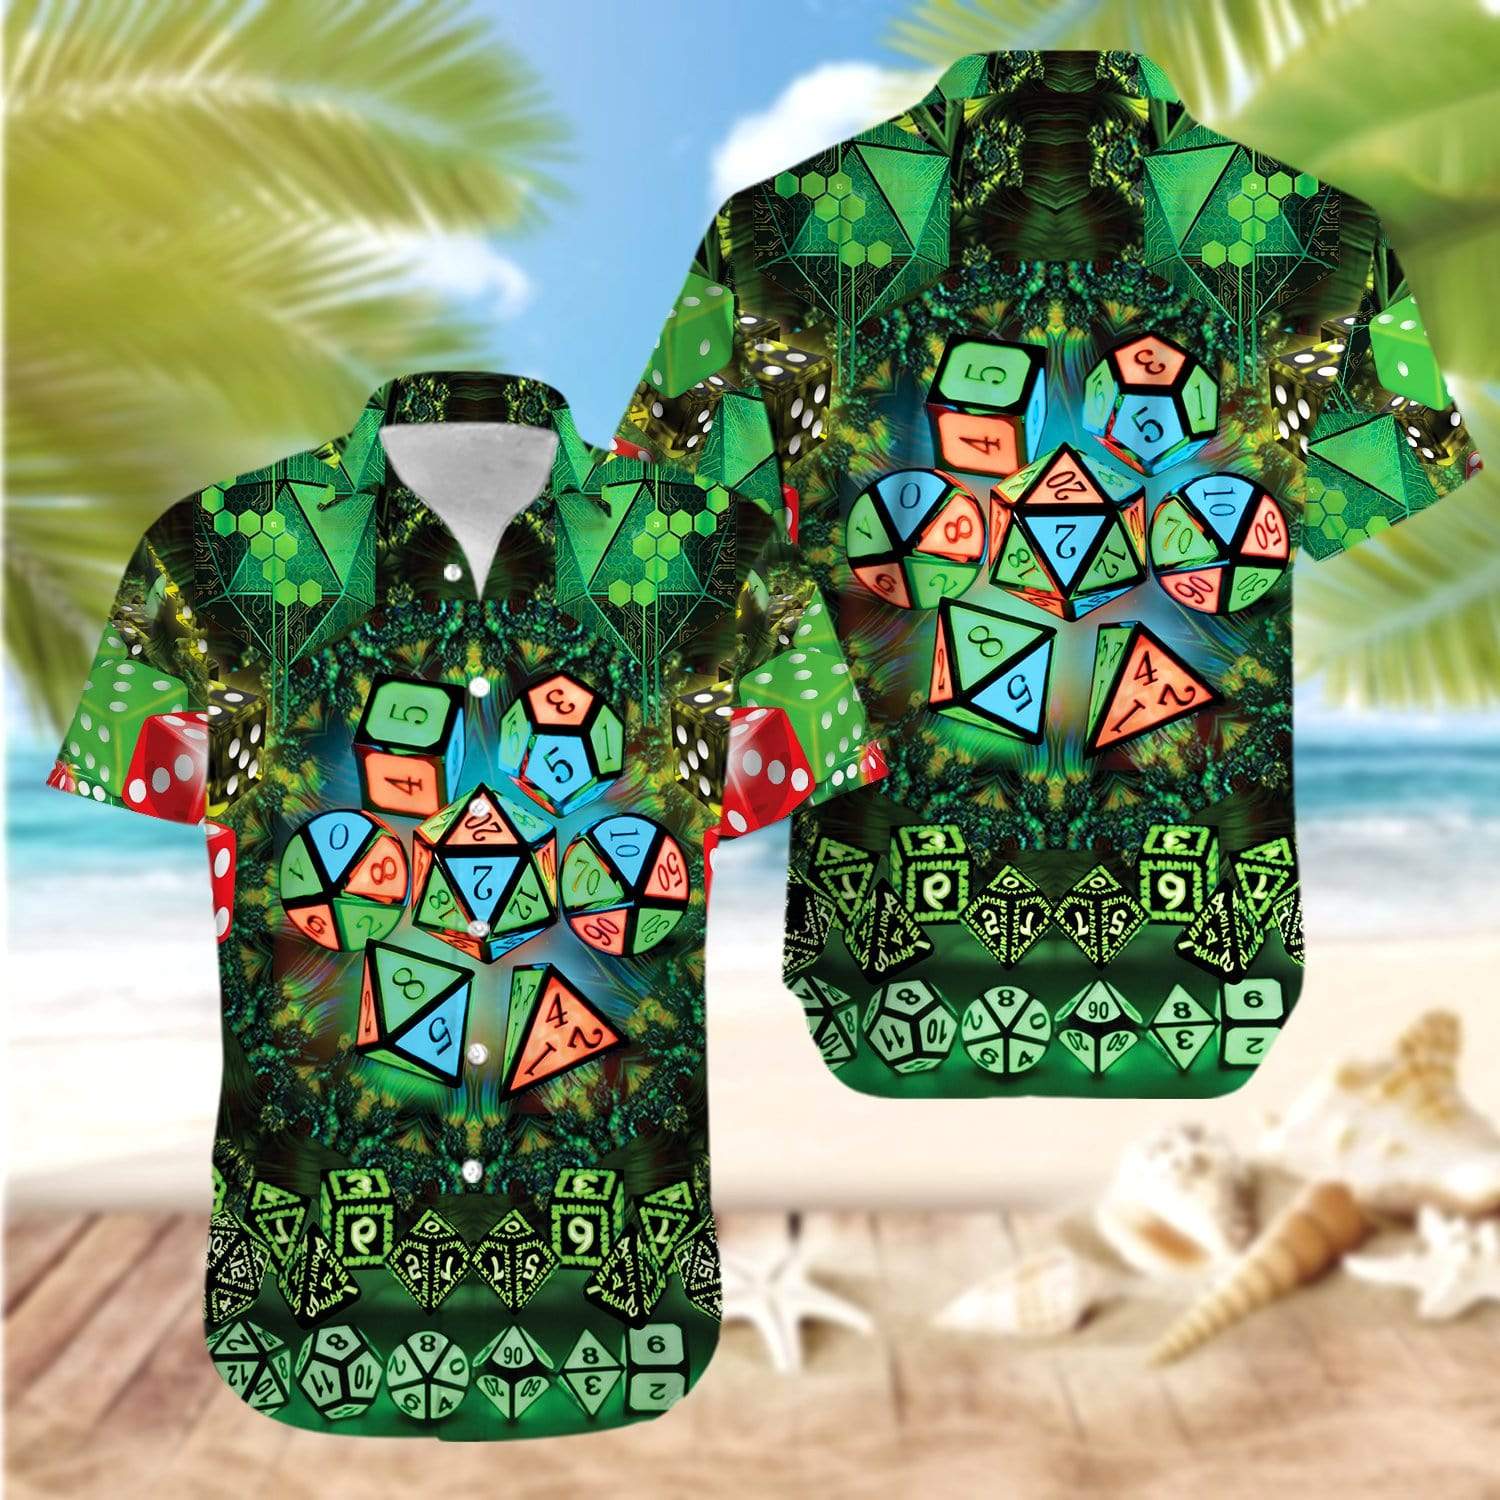 Glowing Kaleidoscope Dice Luck Green Hawaiian Aloha Shirt For Men Women